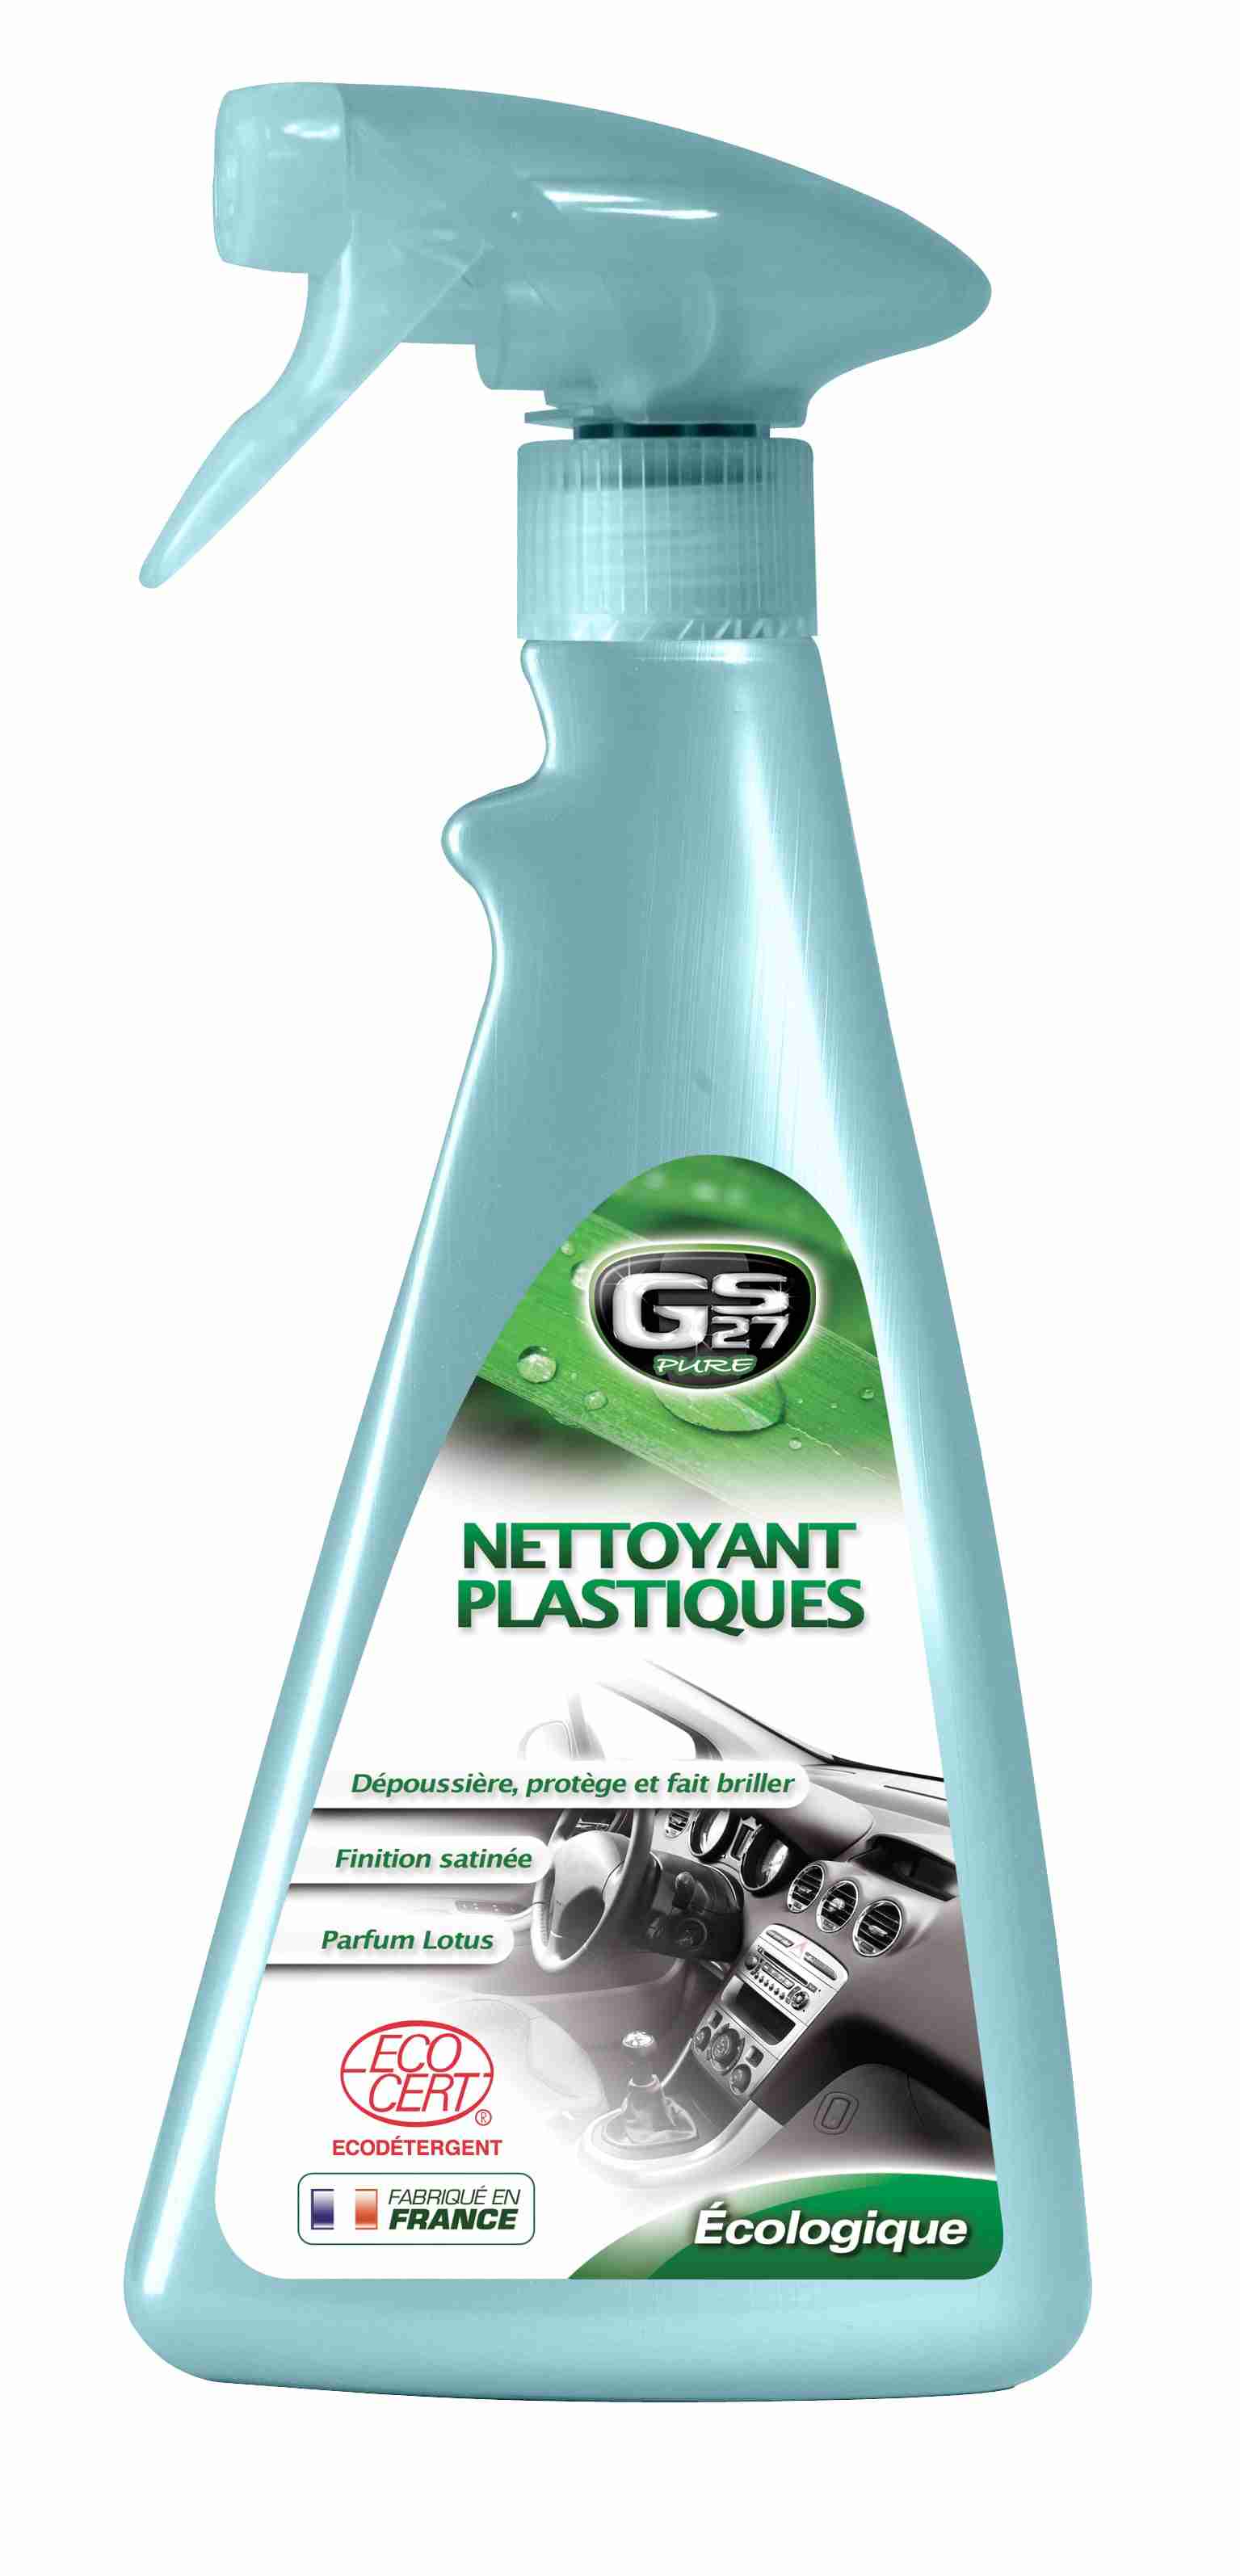 Nettoyant Plastiques Ecologique